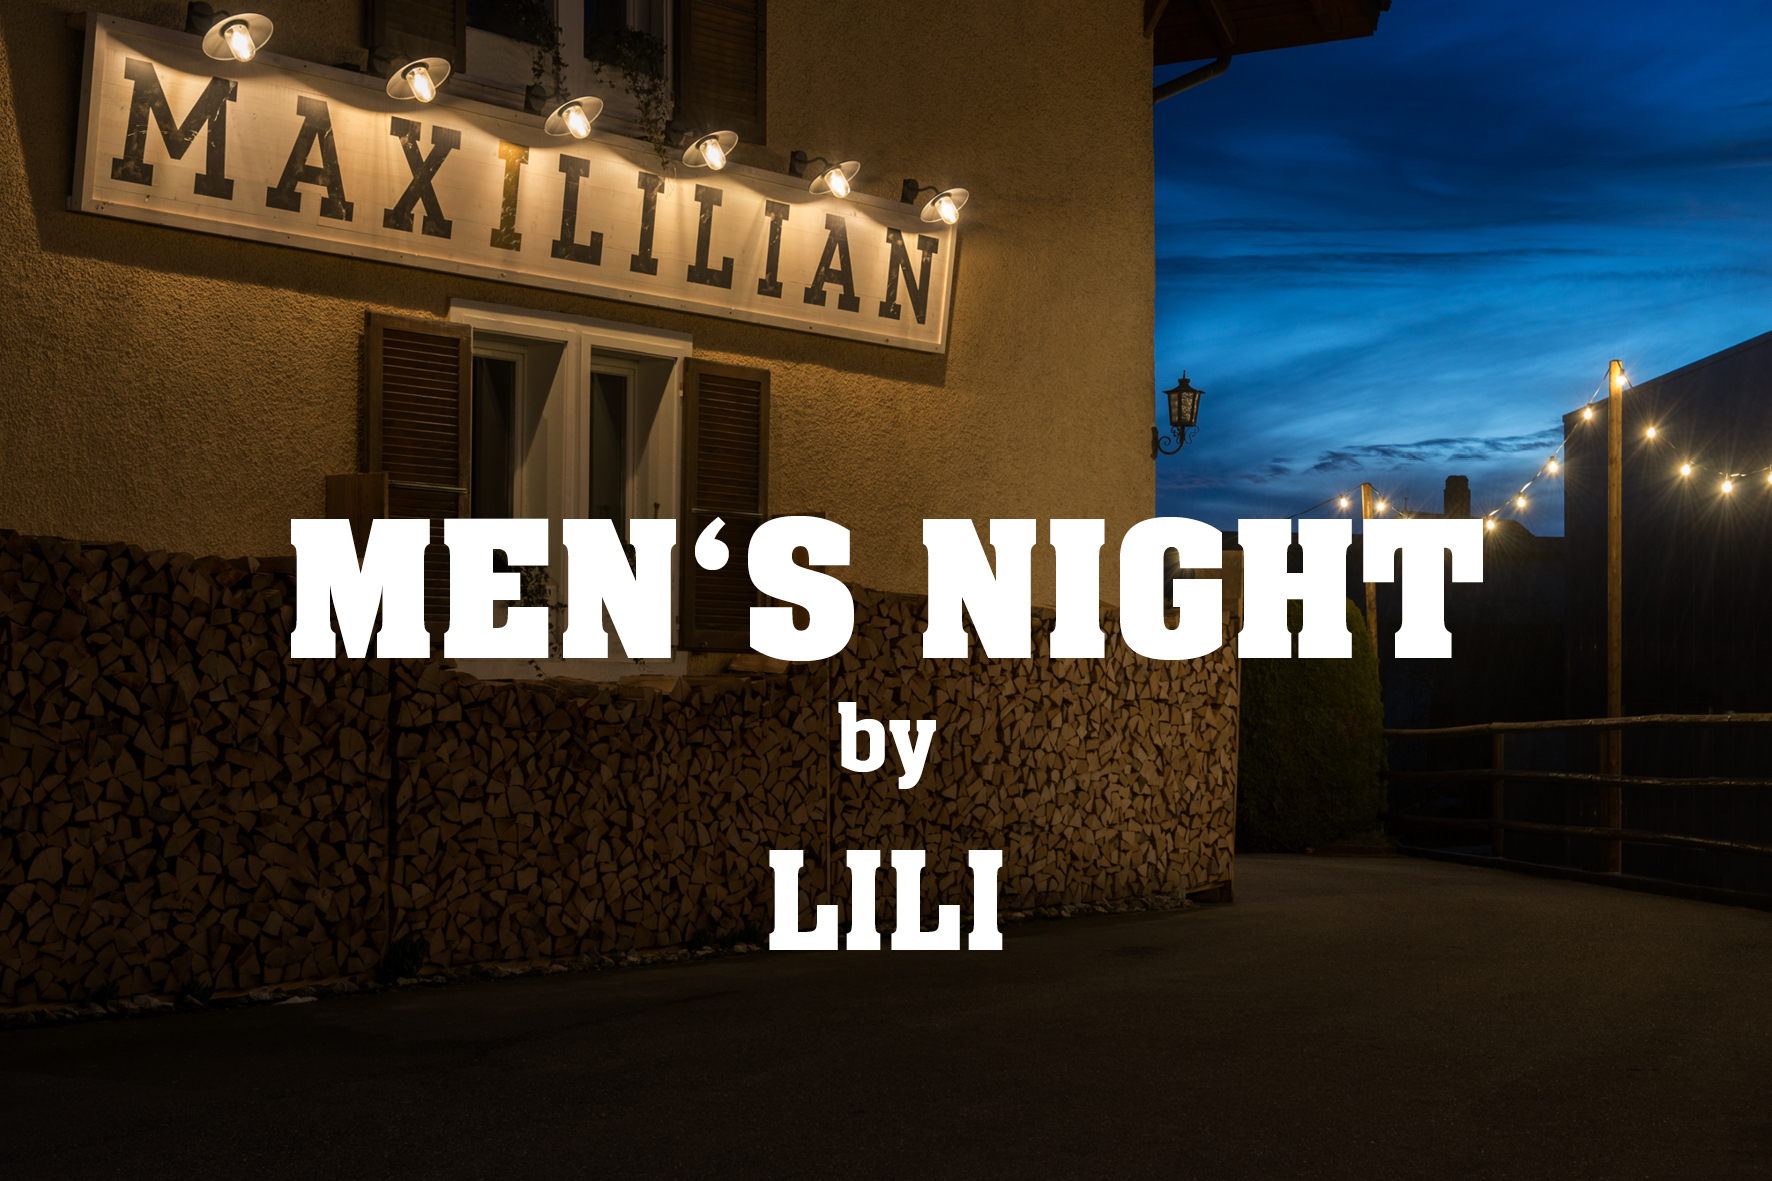 Men's Night im Maxililian